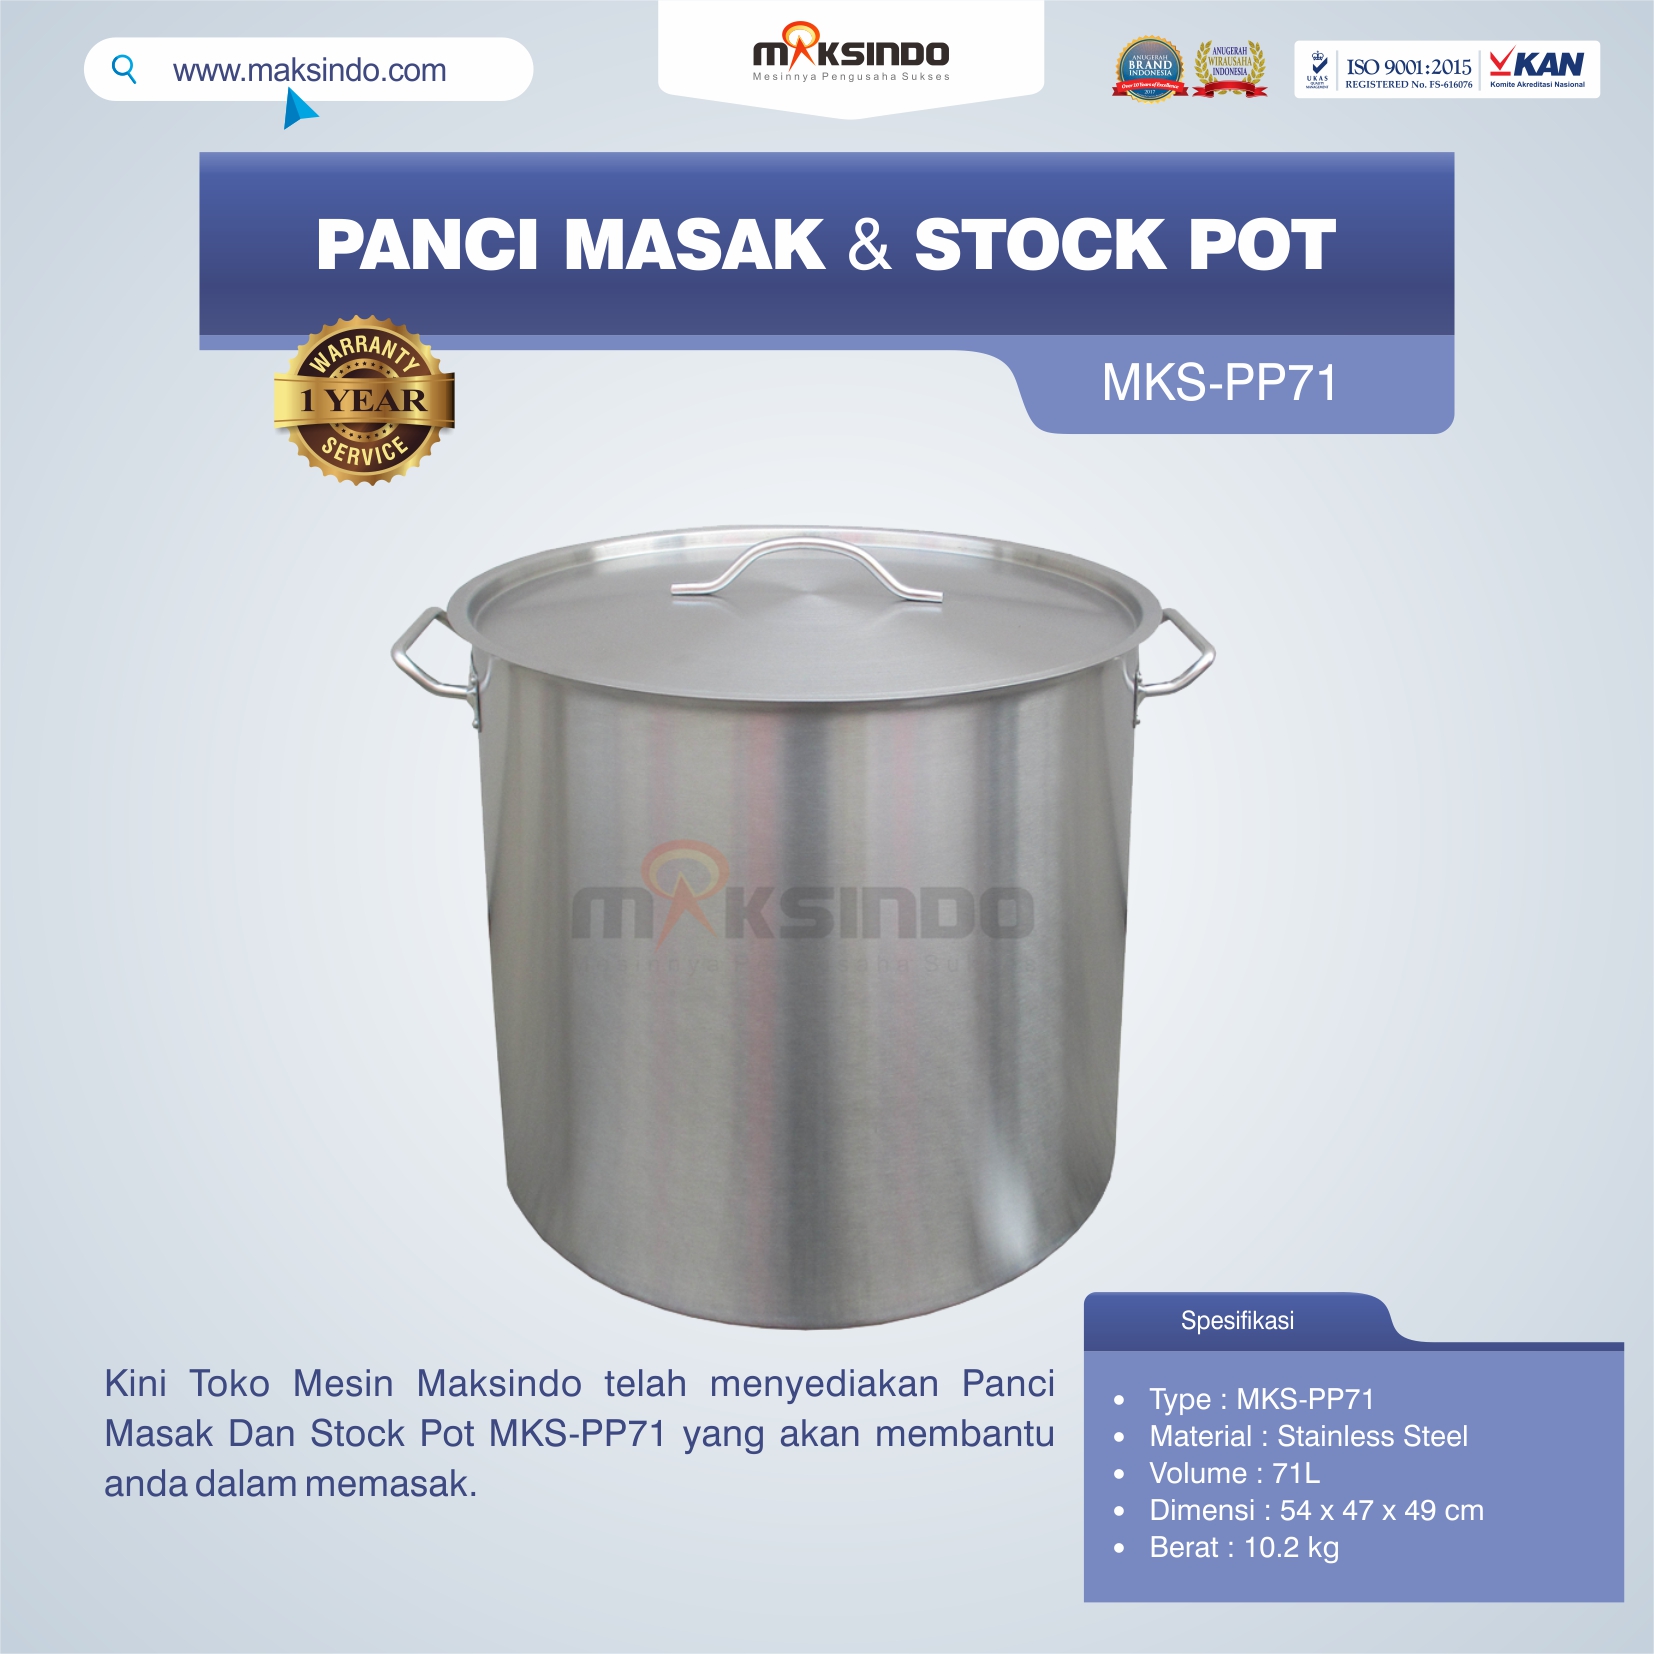 Jual Panci Masak Dan Stock Pot MKS-PP71 di Tangerang